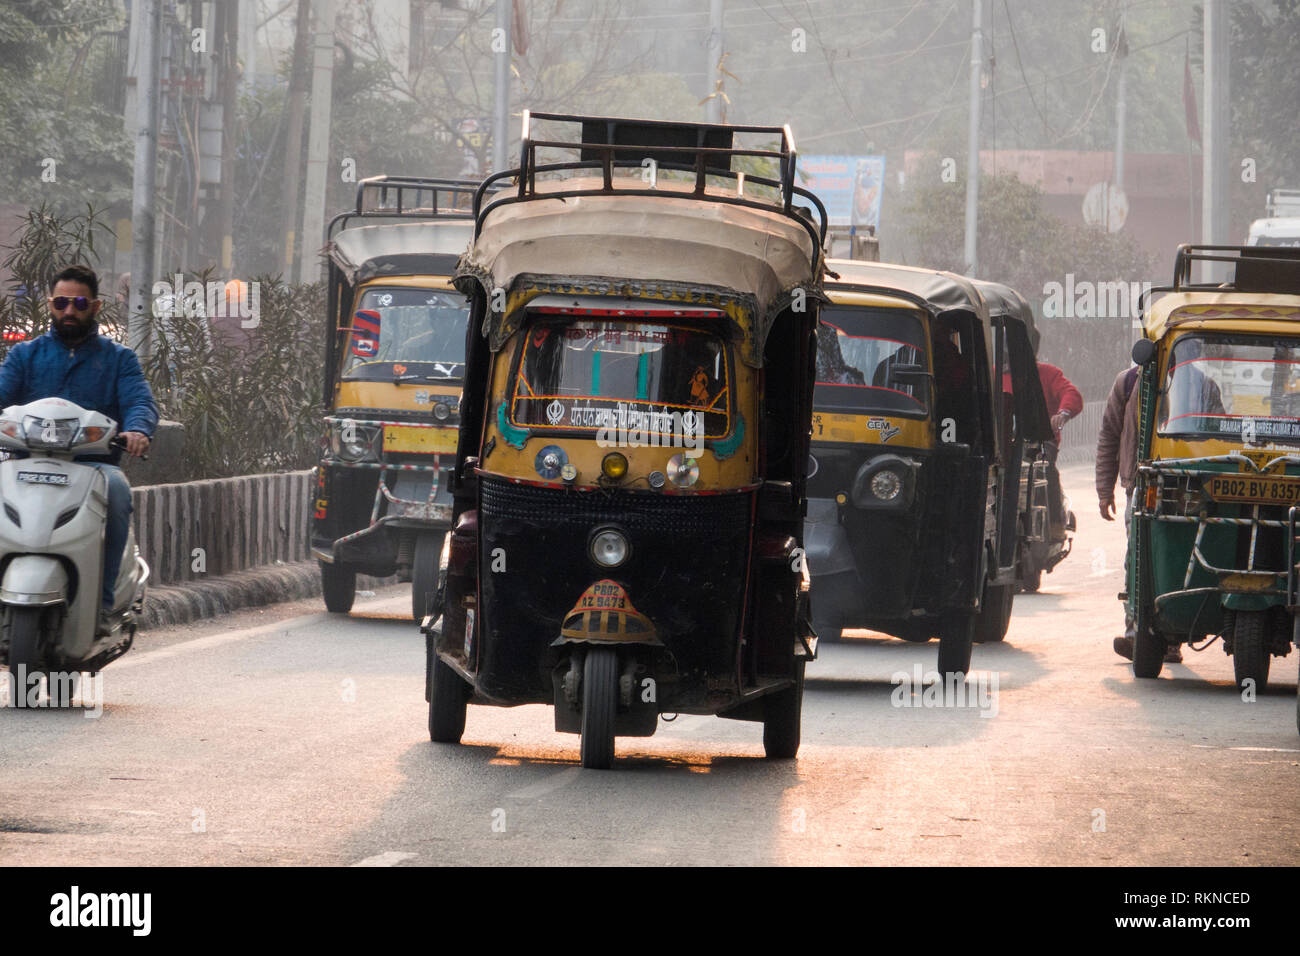 Auto-rikschas und anderen Datenverkehr auf Stadt Straße in Amritsar, Indien Stockfoto